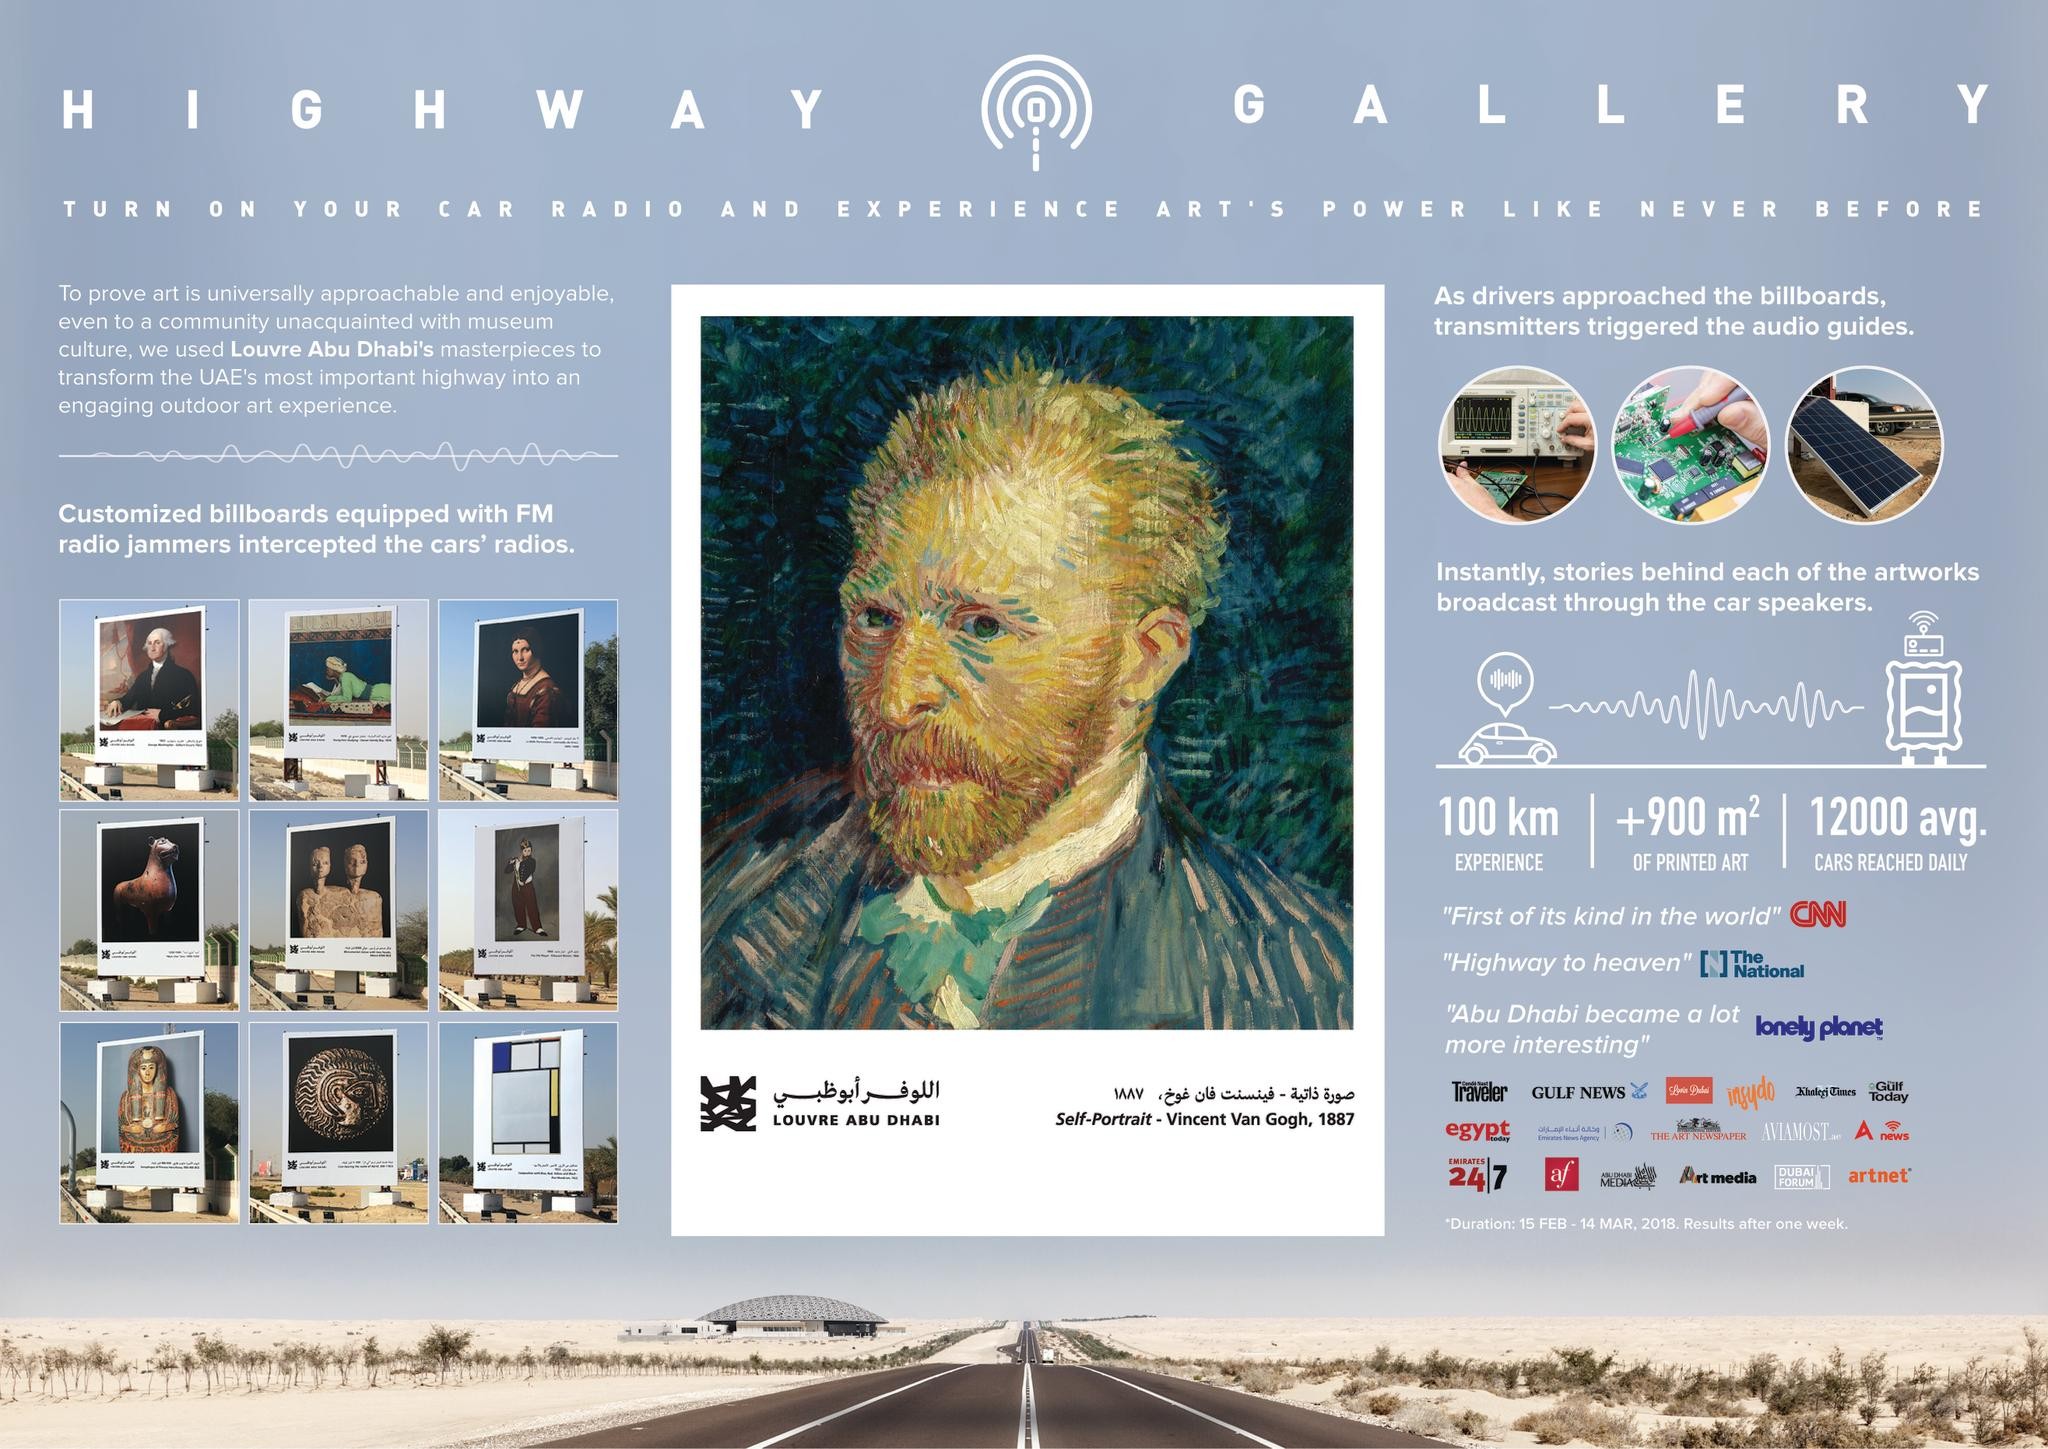 Highway Gallery